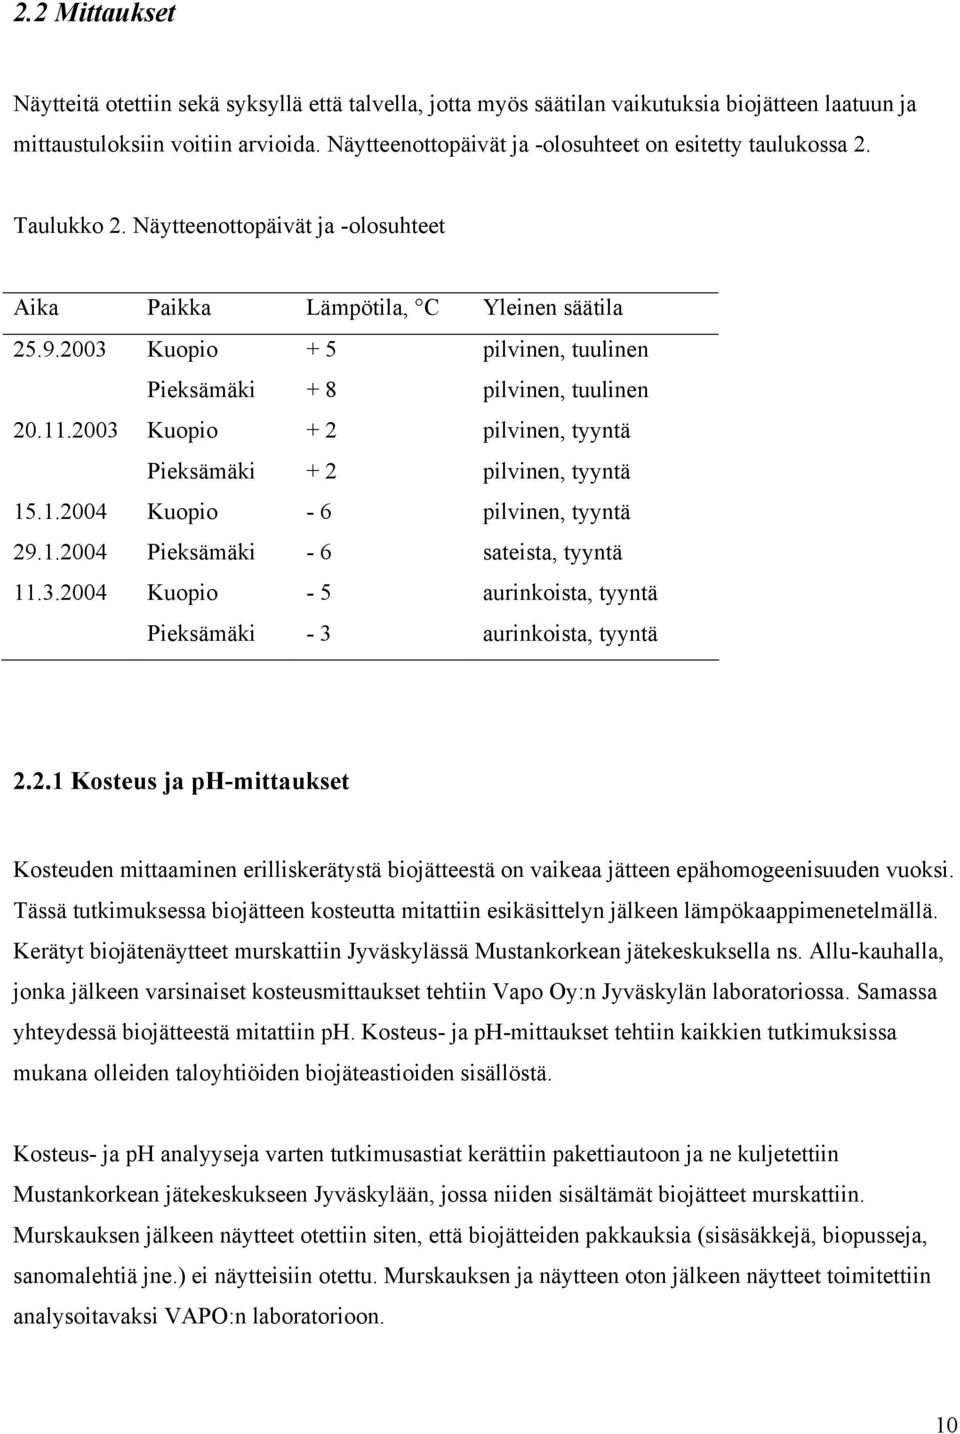 2003 Kuopio Pieksämäki + 5 + 8 pilvinen, tuulinen pilvinen, tuulinen 20.11.2003 Kuopio Pieksämäki + 2 + 2 pilvinen, tyyntä pilvinen, tyyntä 15.1.2004 Kuopio - 6 pilvinen, tyyntä 29.1.2004 Pieksämäki - 6 sateista, tyyntä 11.